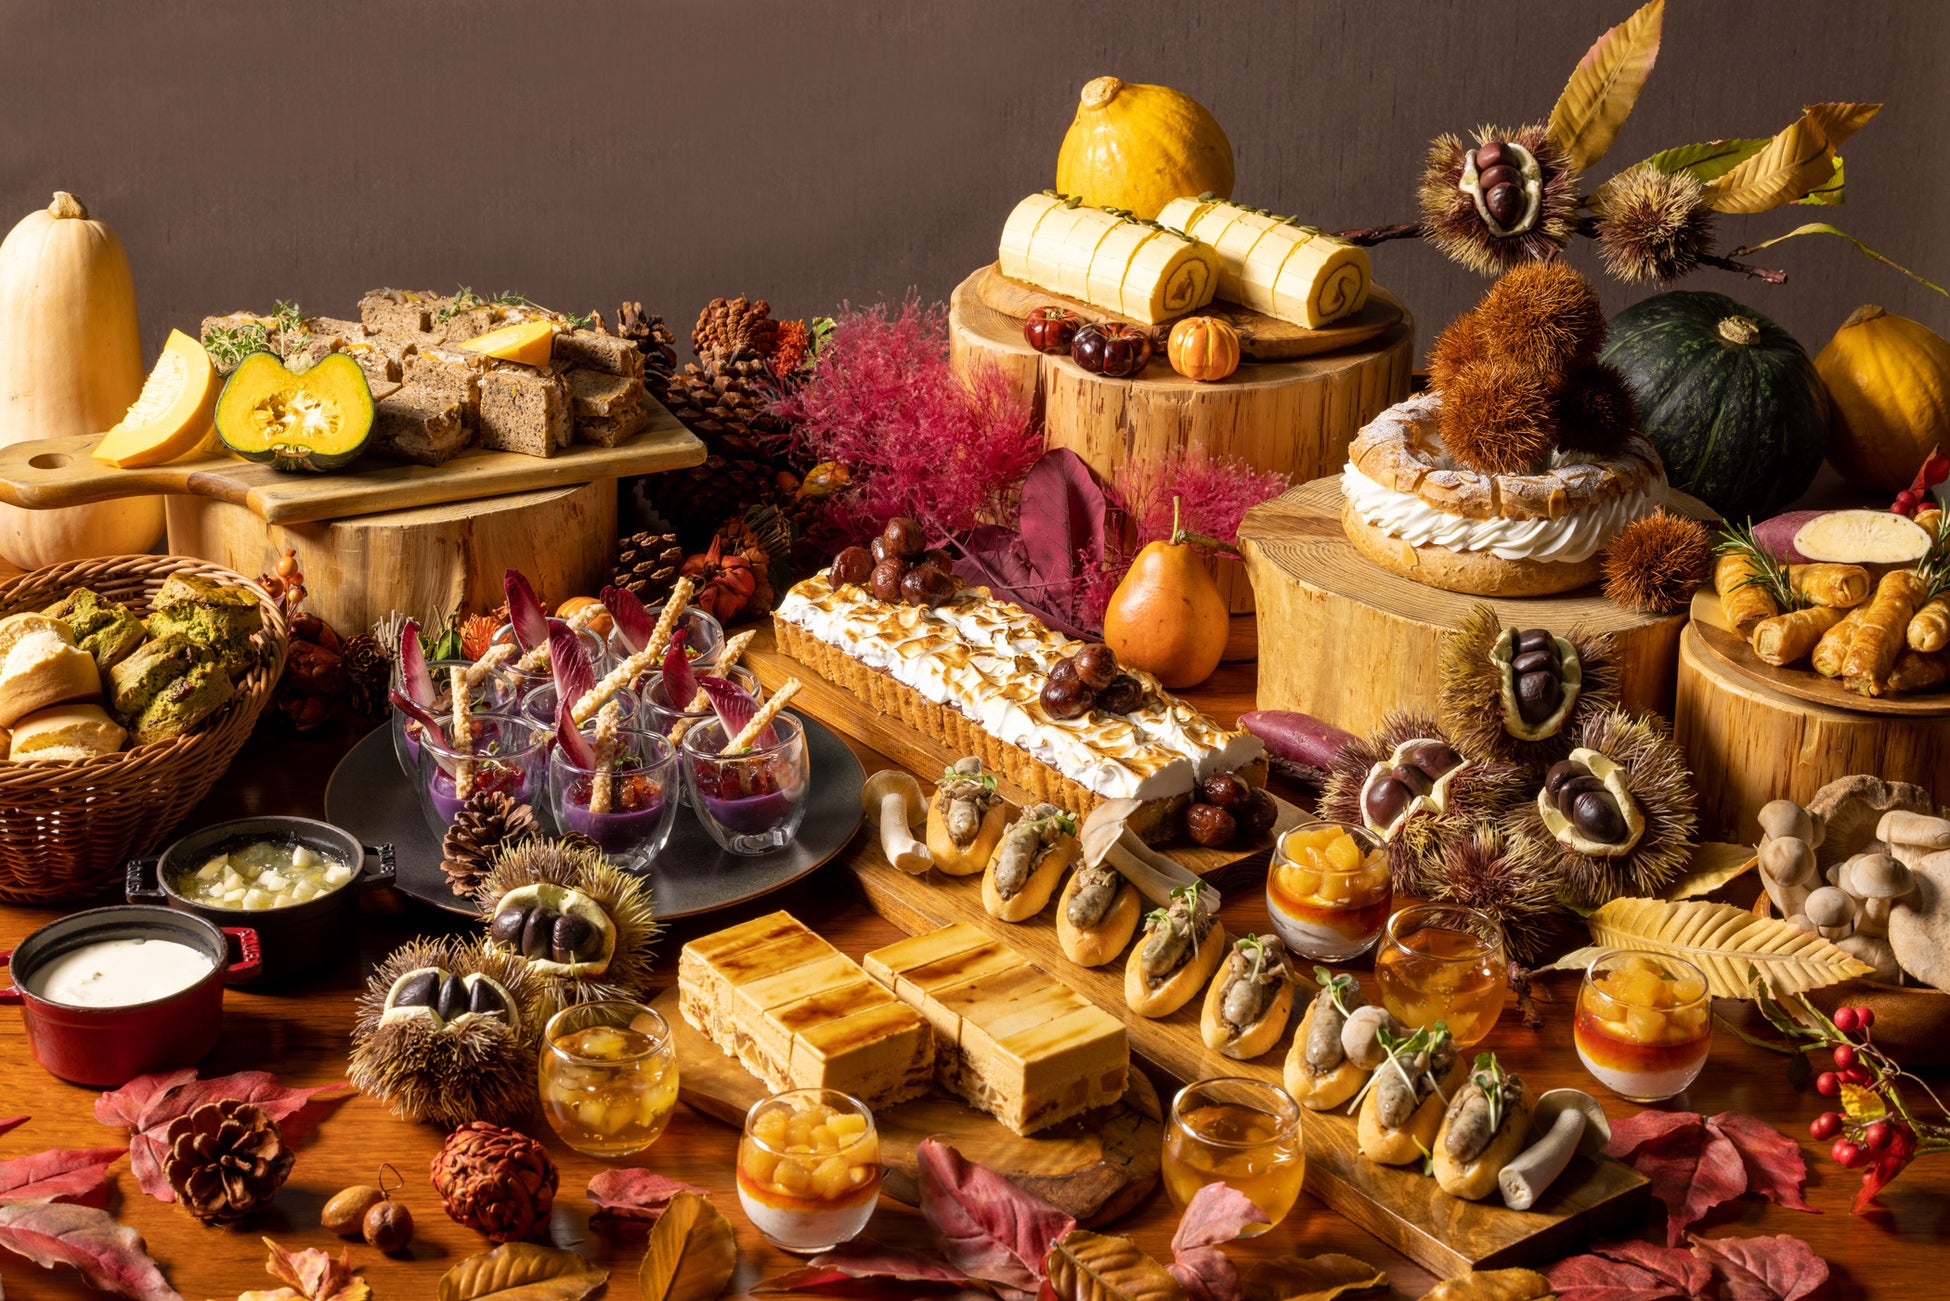 かぼちゃづくしのロールケーキや栗がごろごろと入ったケーキ、さつま芋のパイなど秋の実りを堪能『オータム アフタヌーンティー ブッフェ』を期間限定で開催